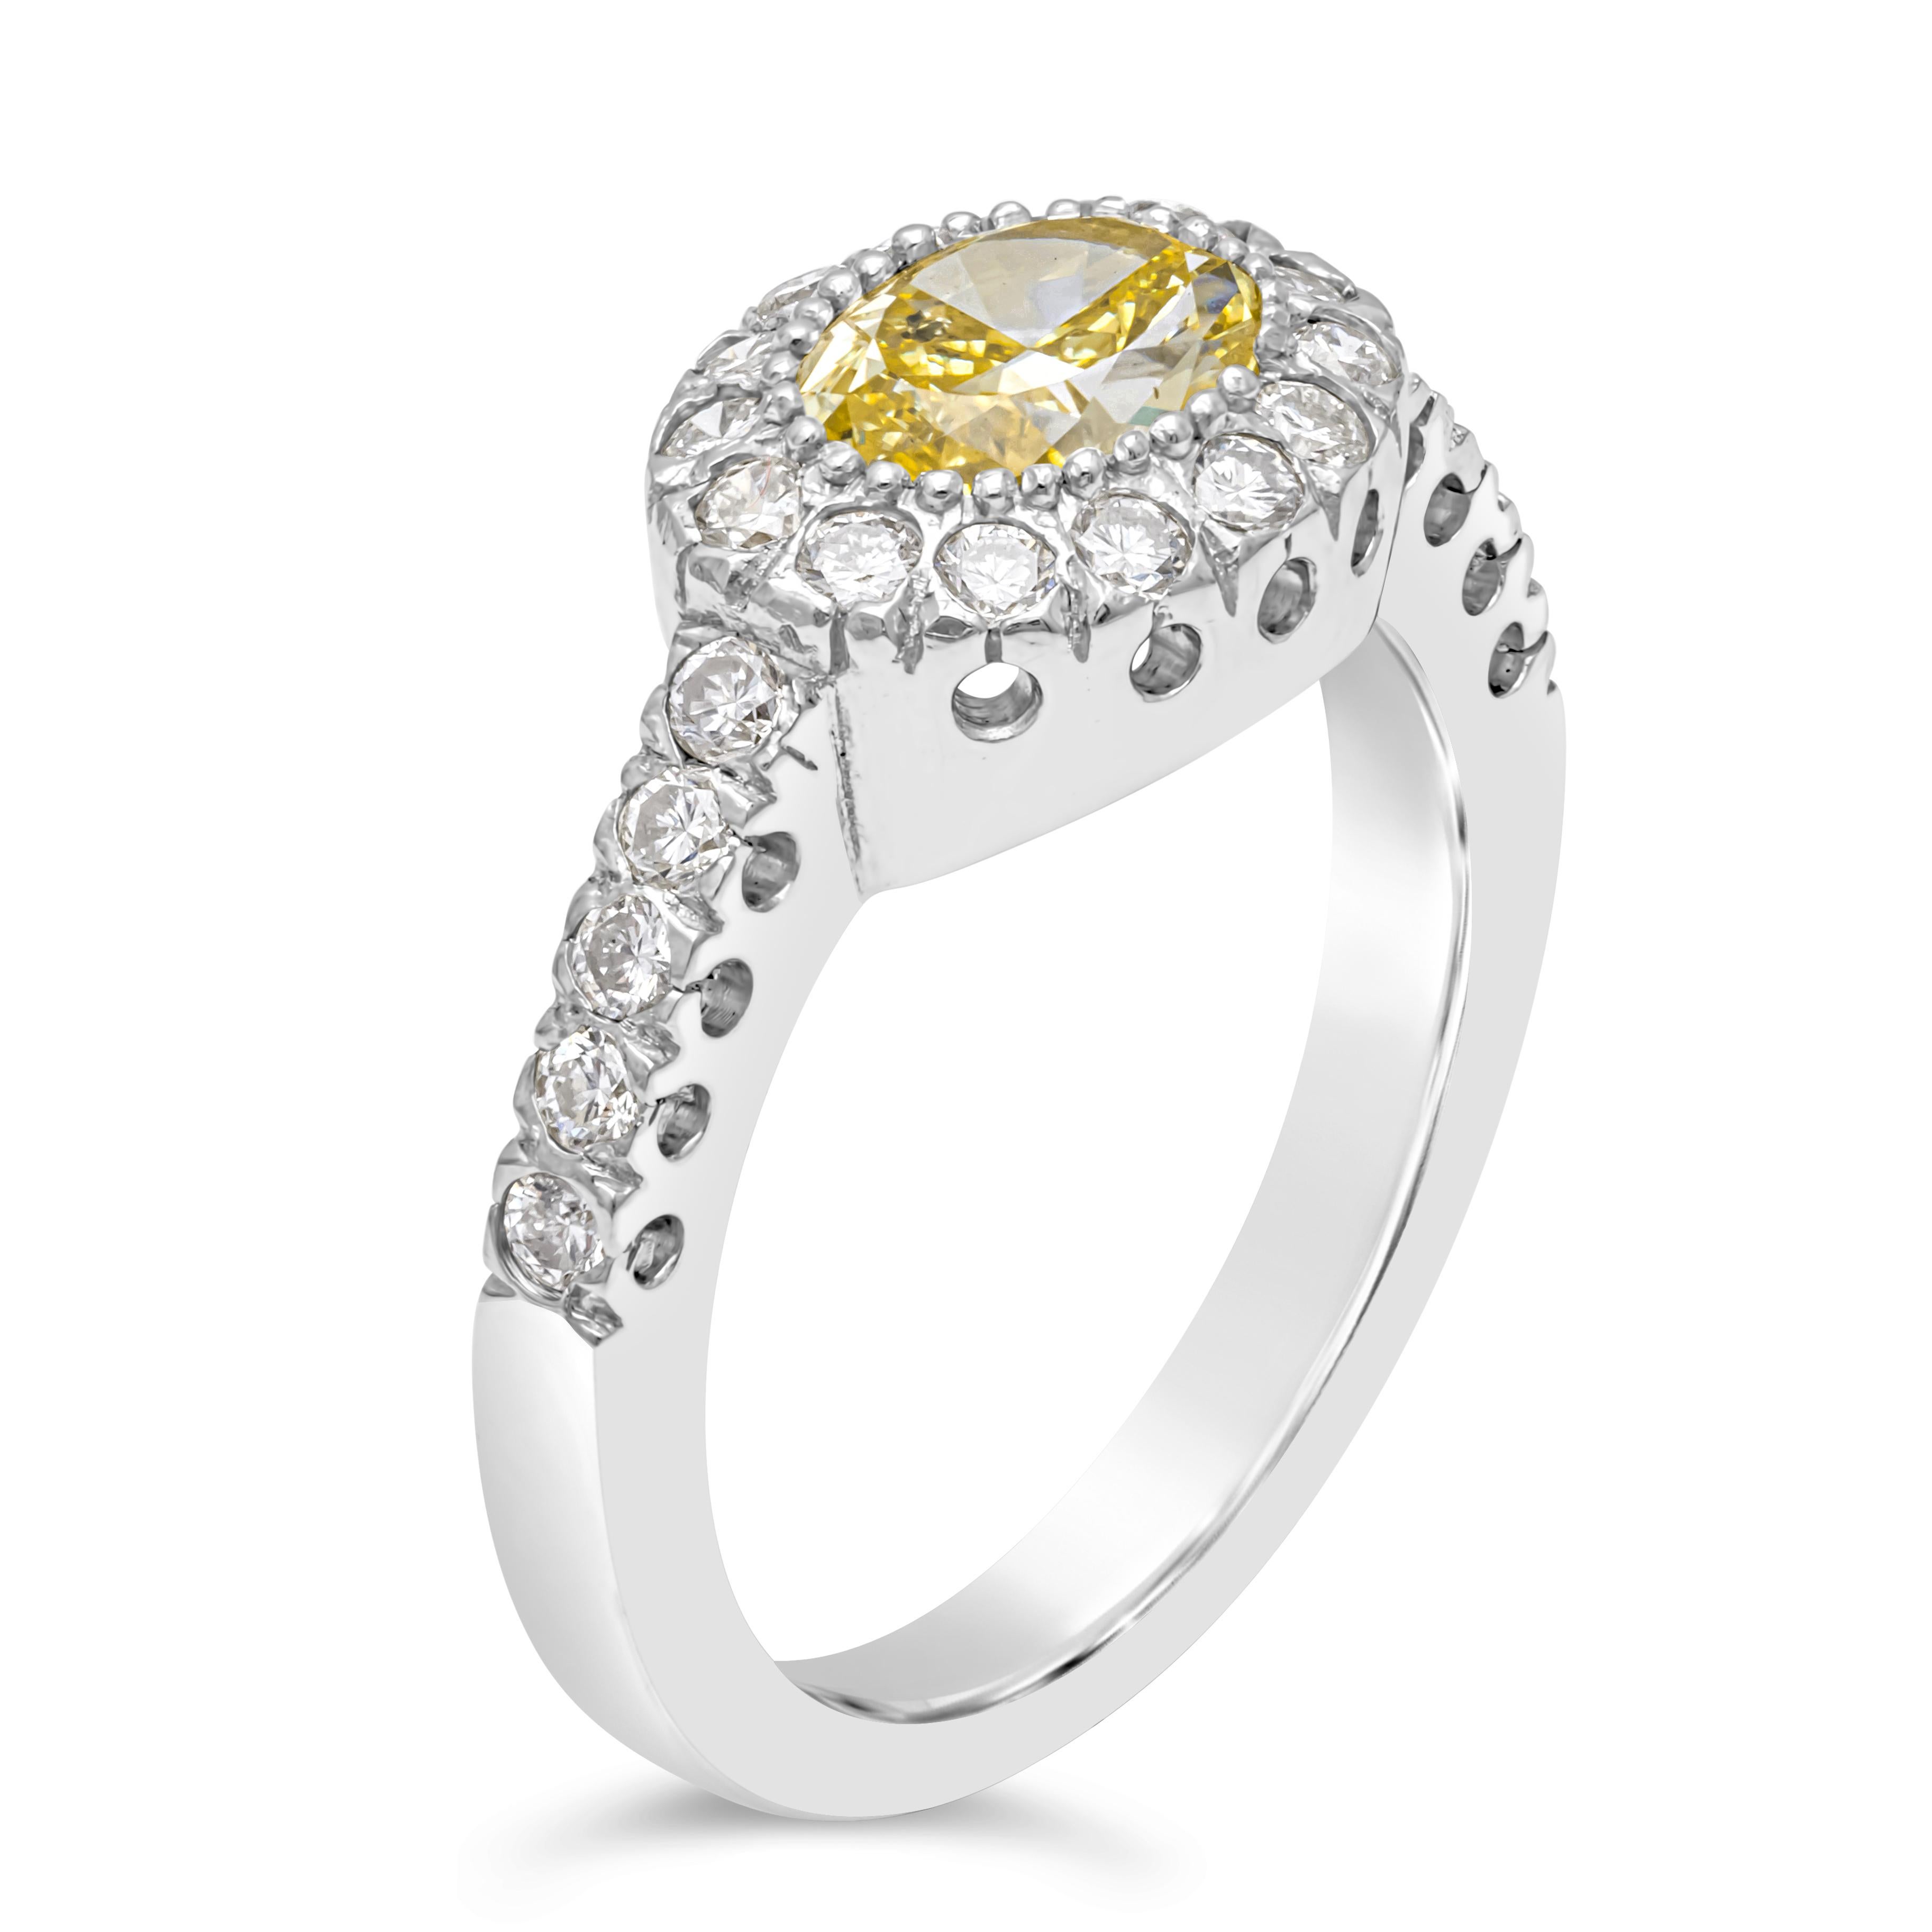 Ein gut gearbeiteter Verlobungsring mit einem farbenprächtigen gelben Diamanten im Ovalschliff von 1,03 Karat, GIA-zertifiziert. Der Mittelstein wird von 24 Brillanten akzentuiert. Eingefasst in eine halbe Ewigkeit in einer Platinfassung. Die